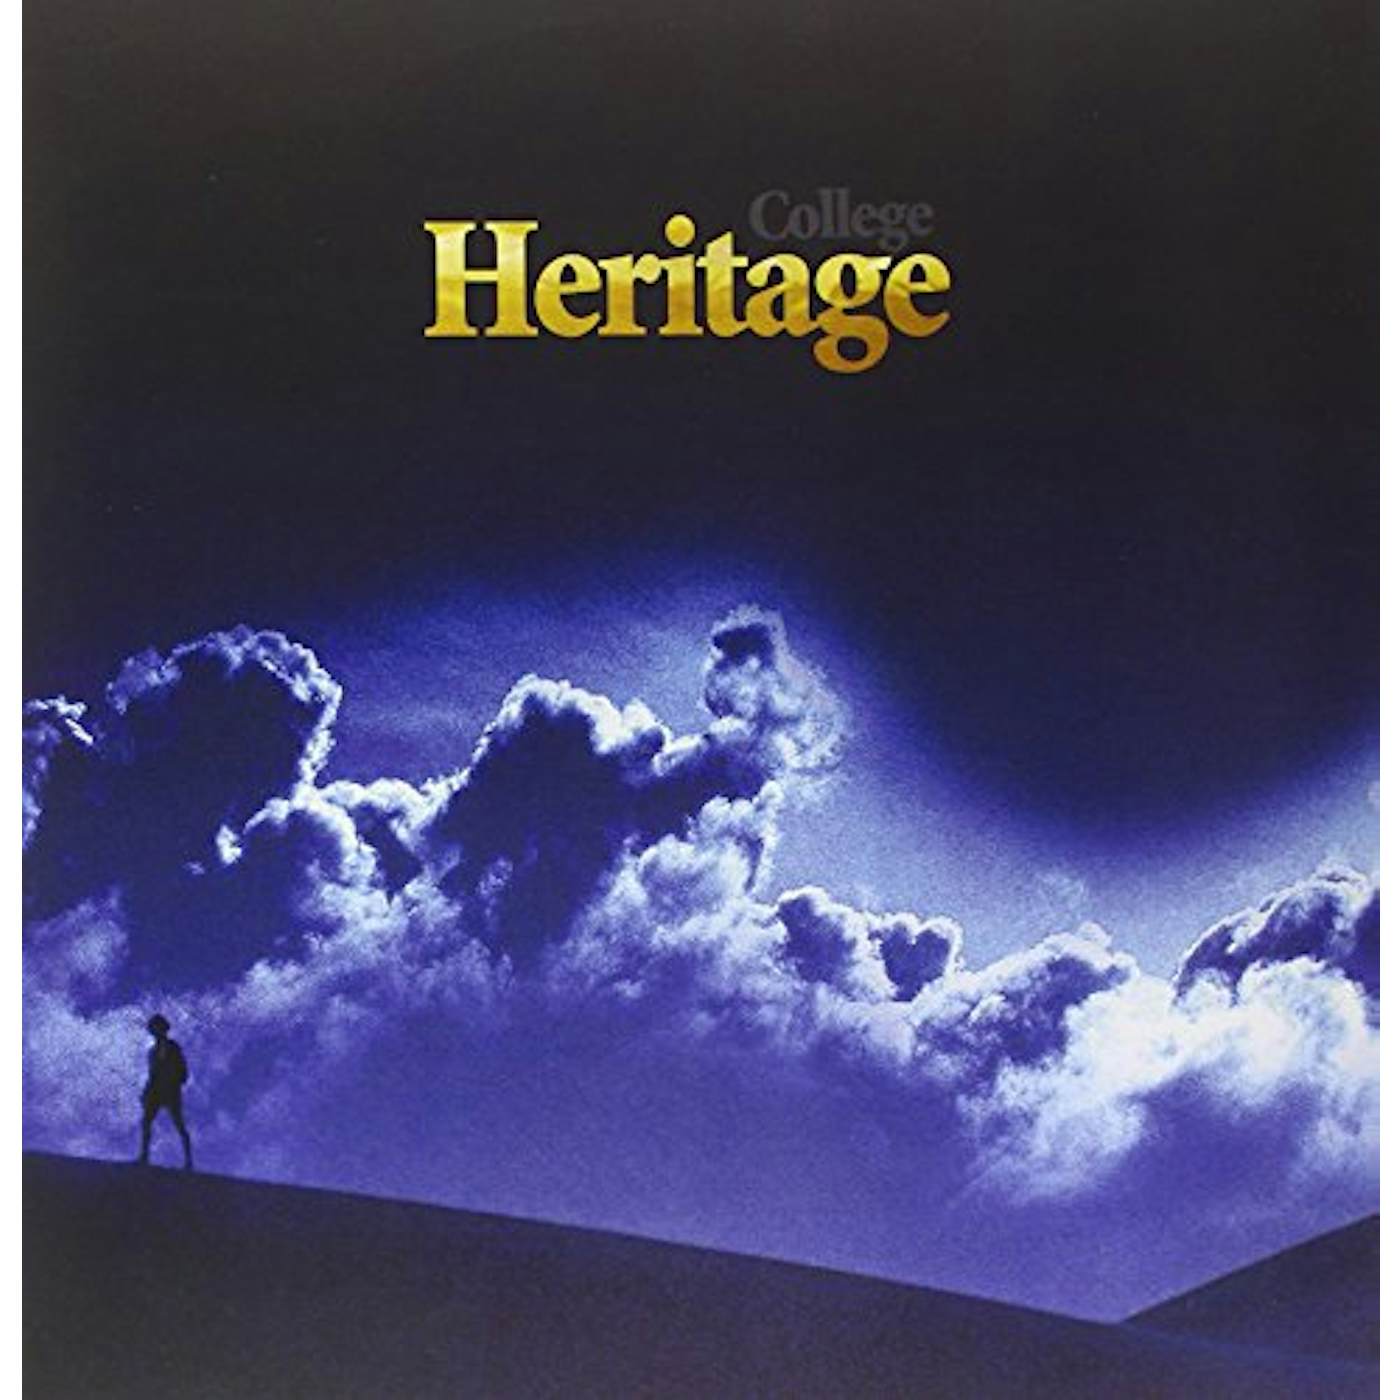 College Heritage Vinyl Record